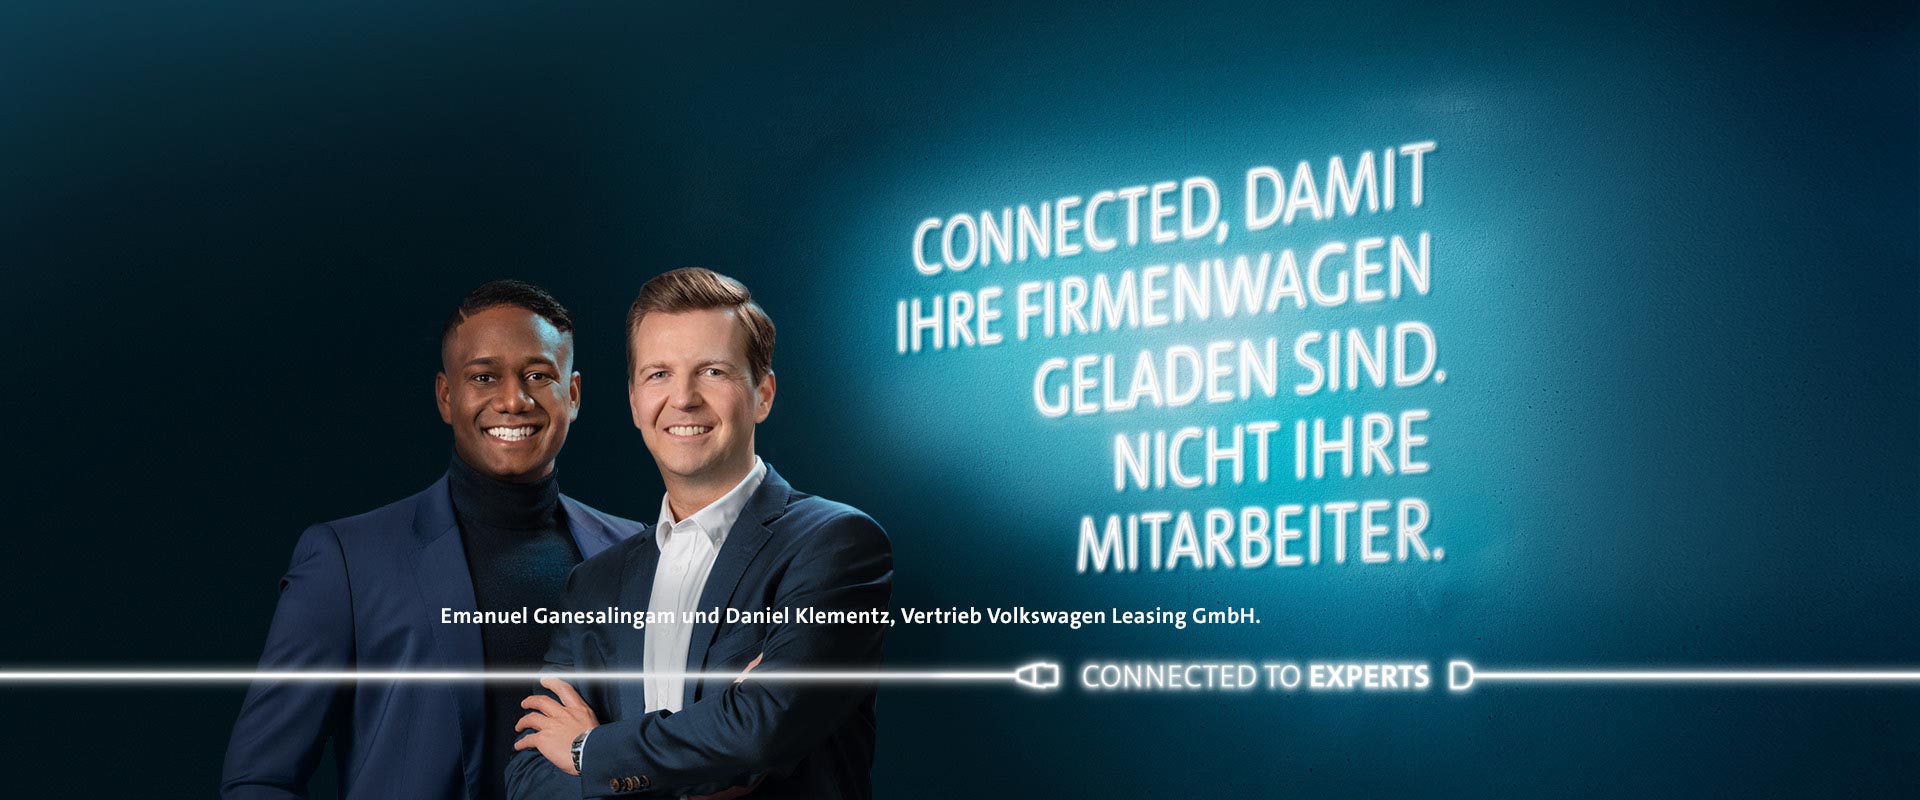 Emanuel Ganesalingam und Daniel Klementz, Vertrieb Volkswagen Leasing GmbH.